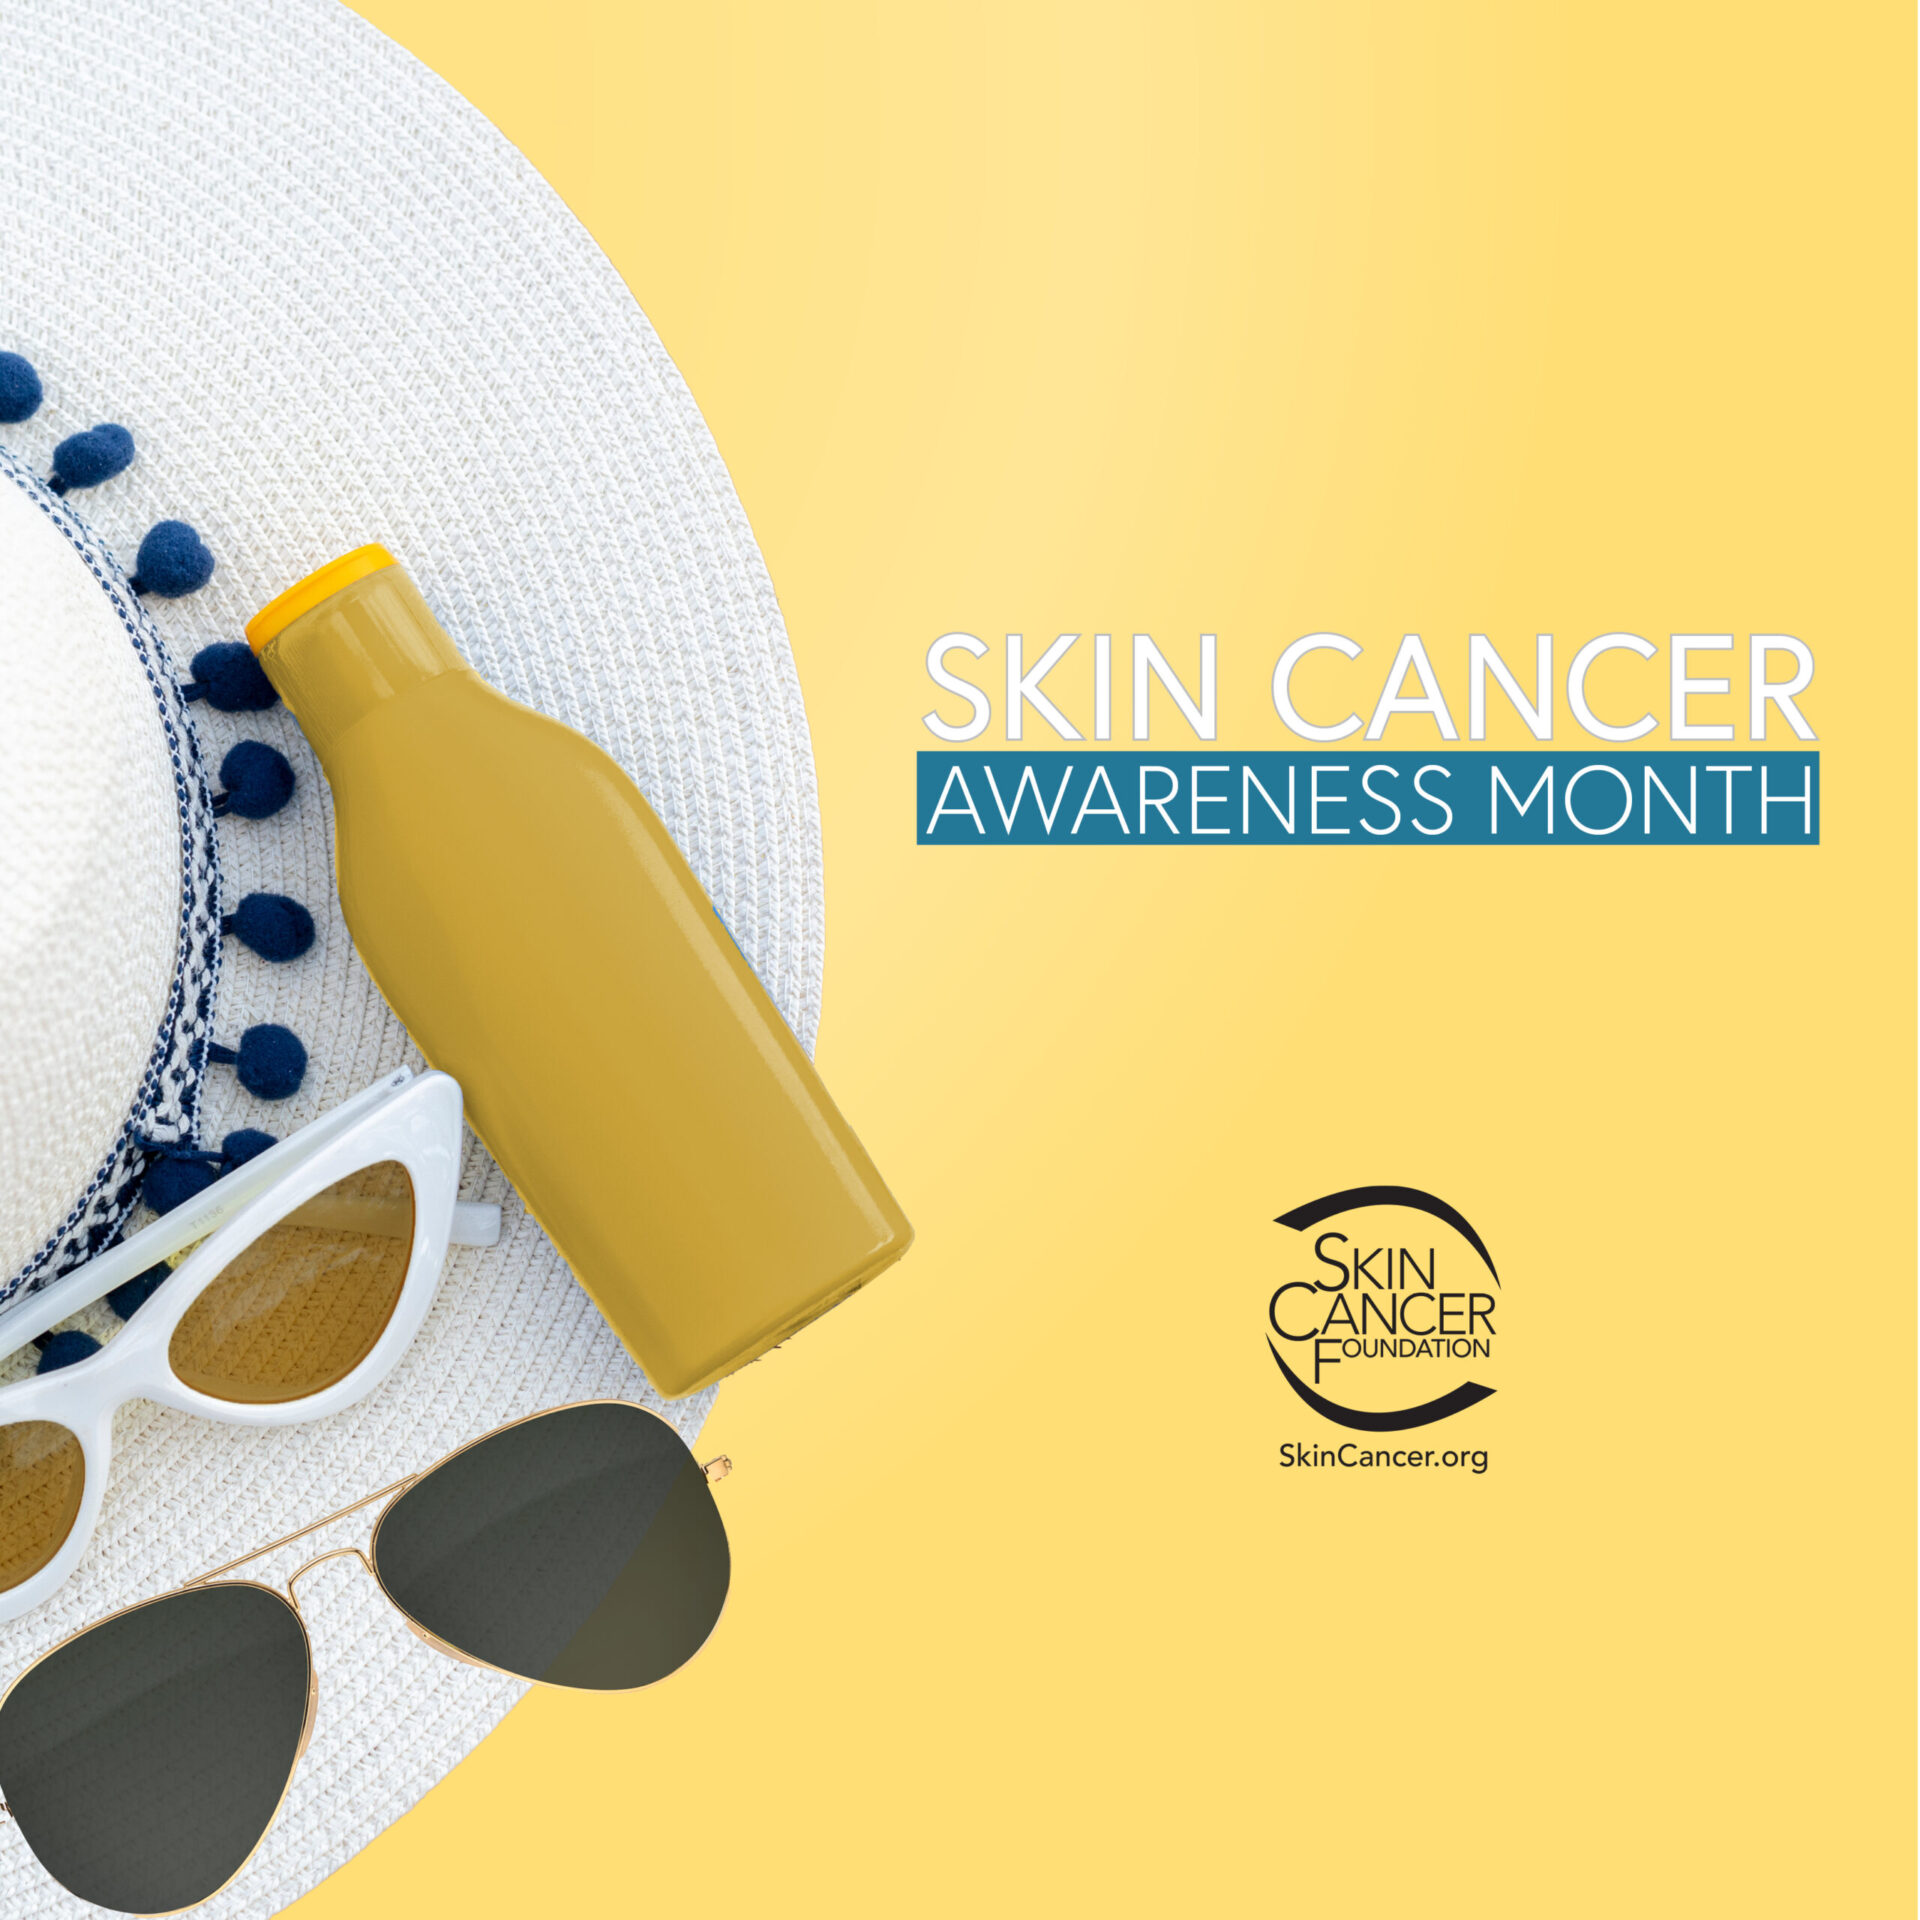 Distintivo del mese della sensibilizzazione sul cancro della pelle